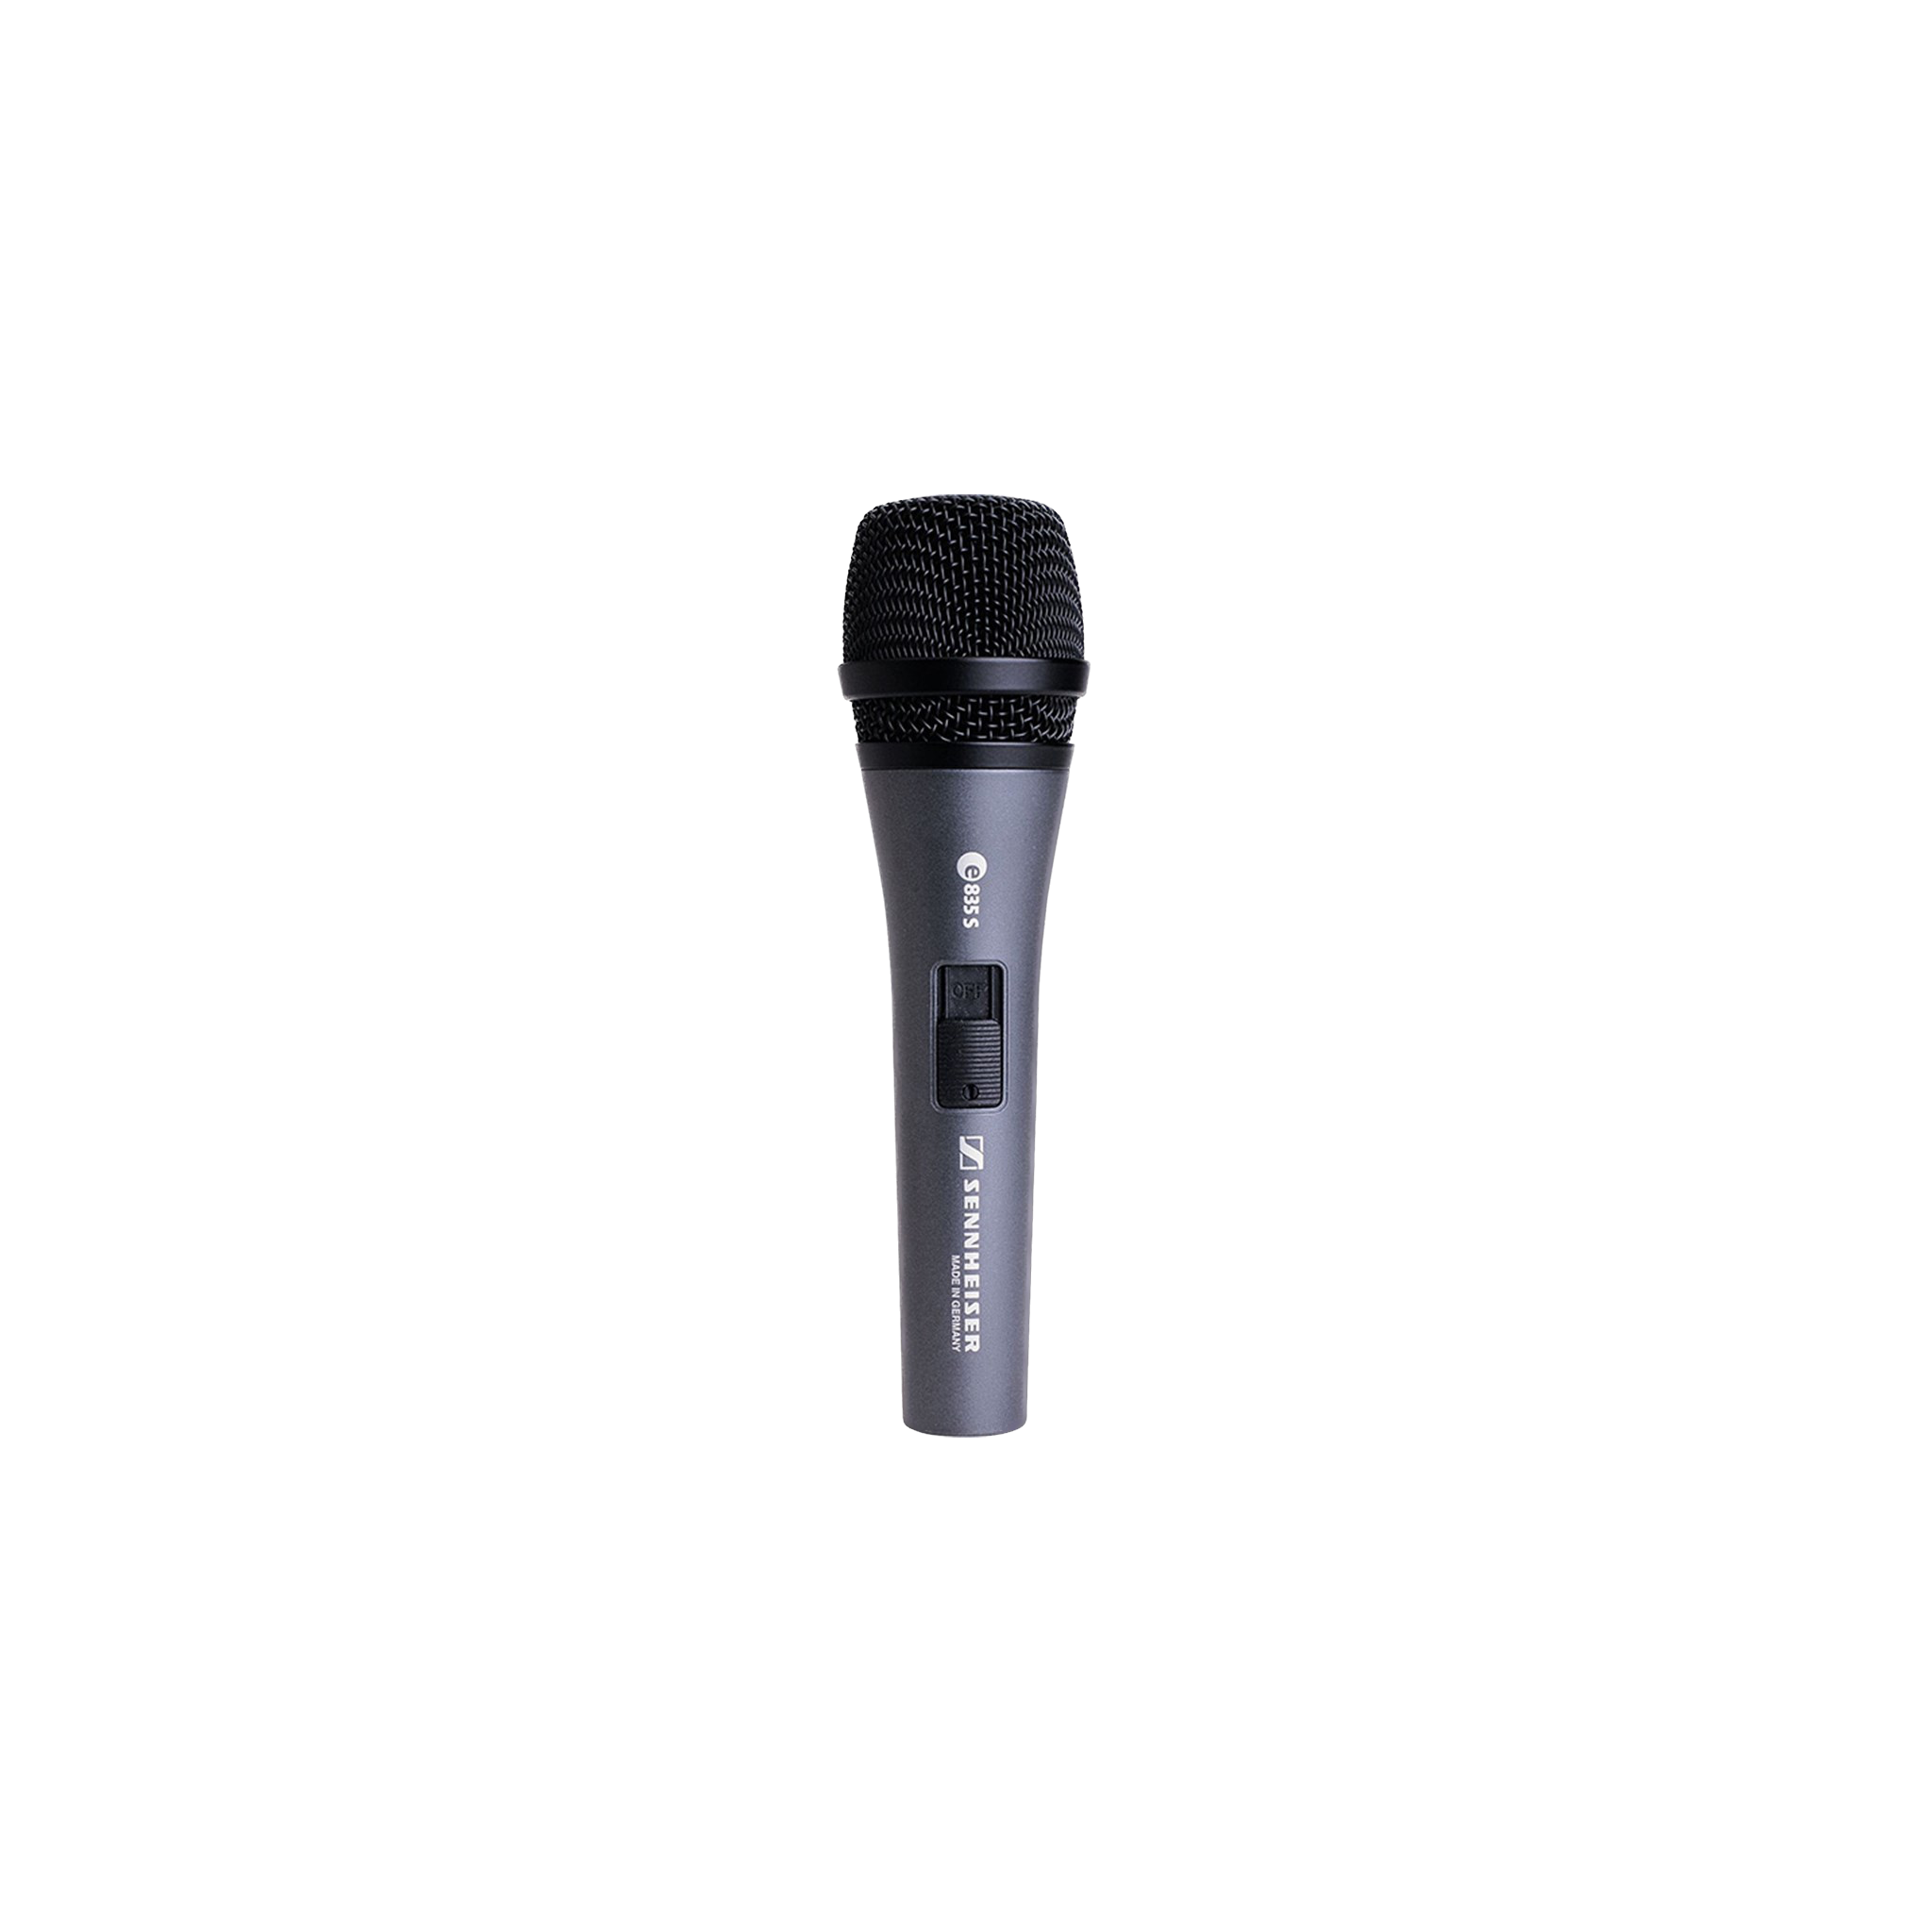 Sennheiser Dynamic Vocal Microphone w/Switch